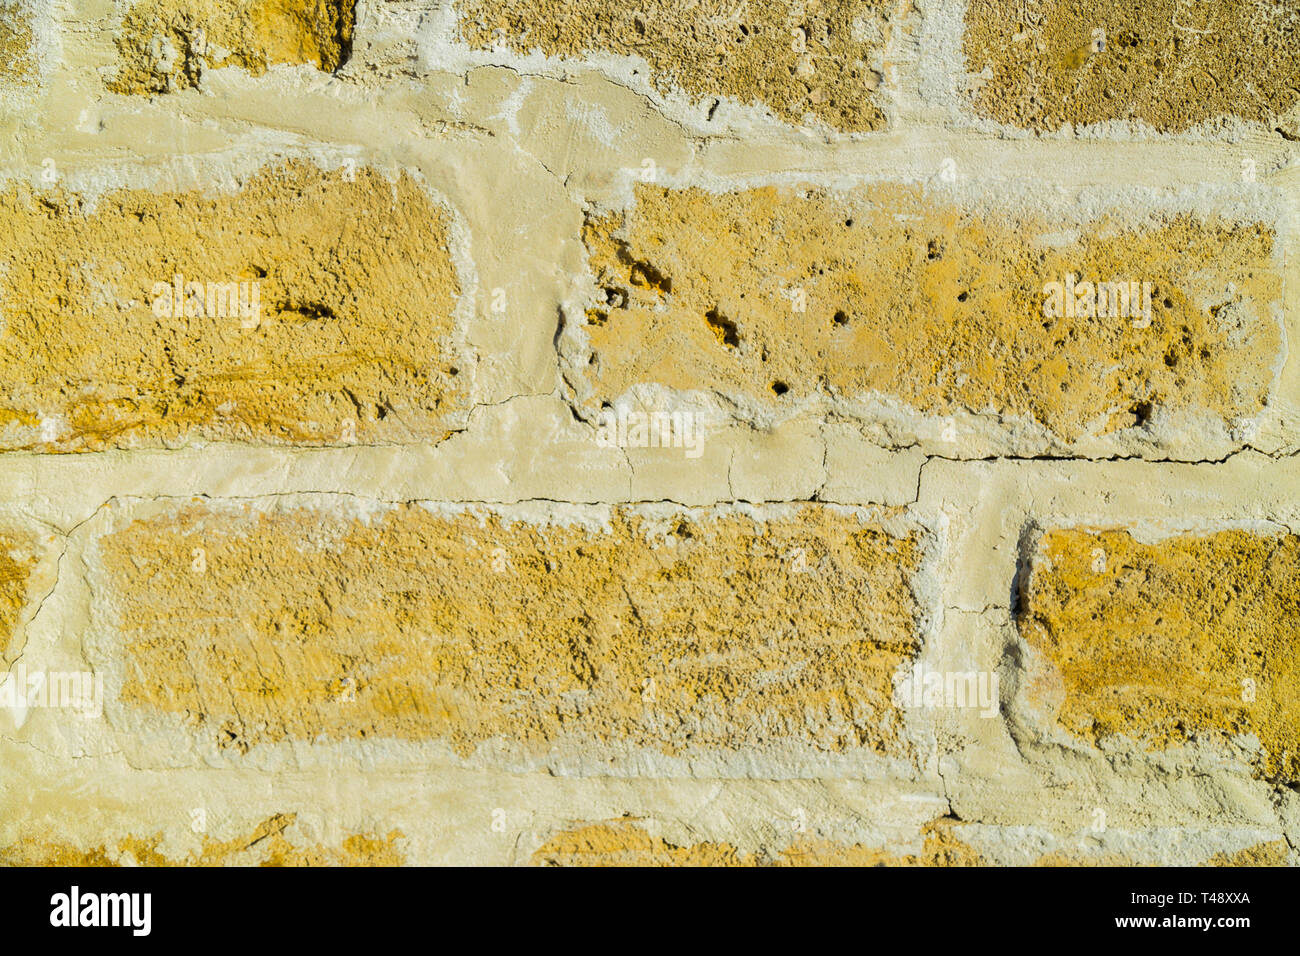 Hintergrund Wand der Bausteine, die Beschaffenheit der Wand Stockfotografie  - Alamy